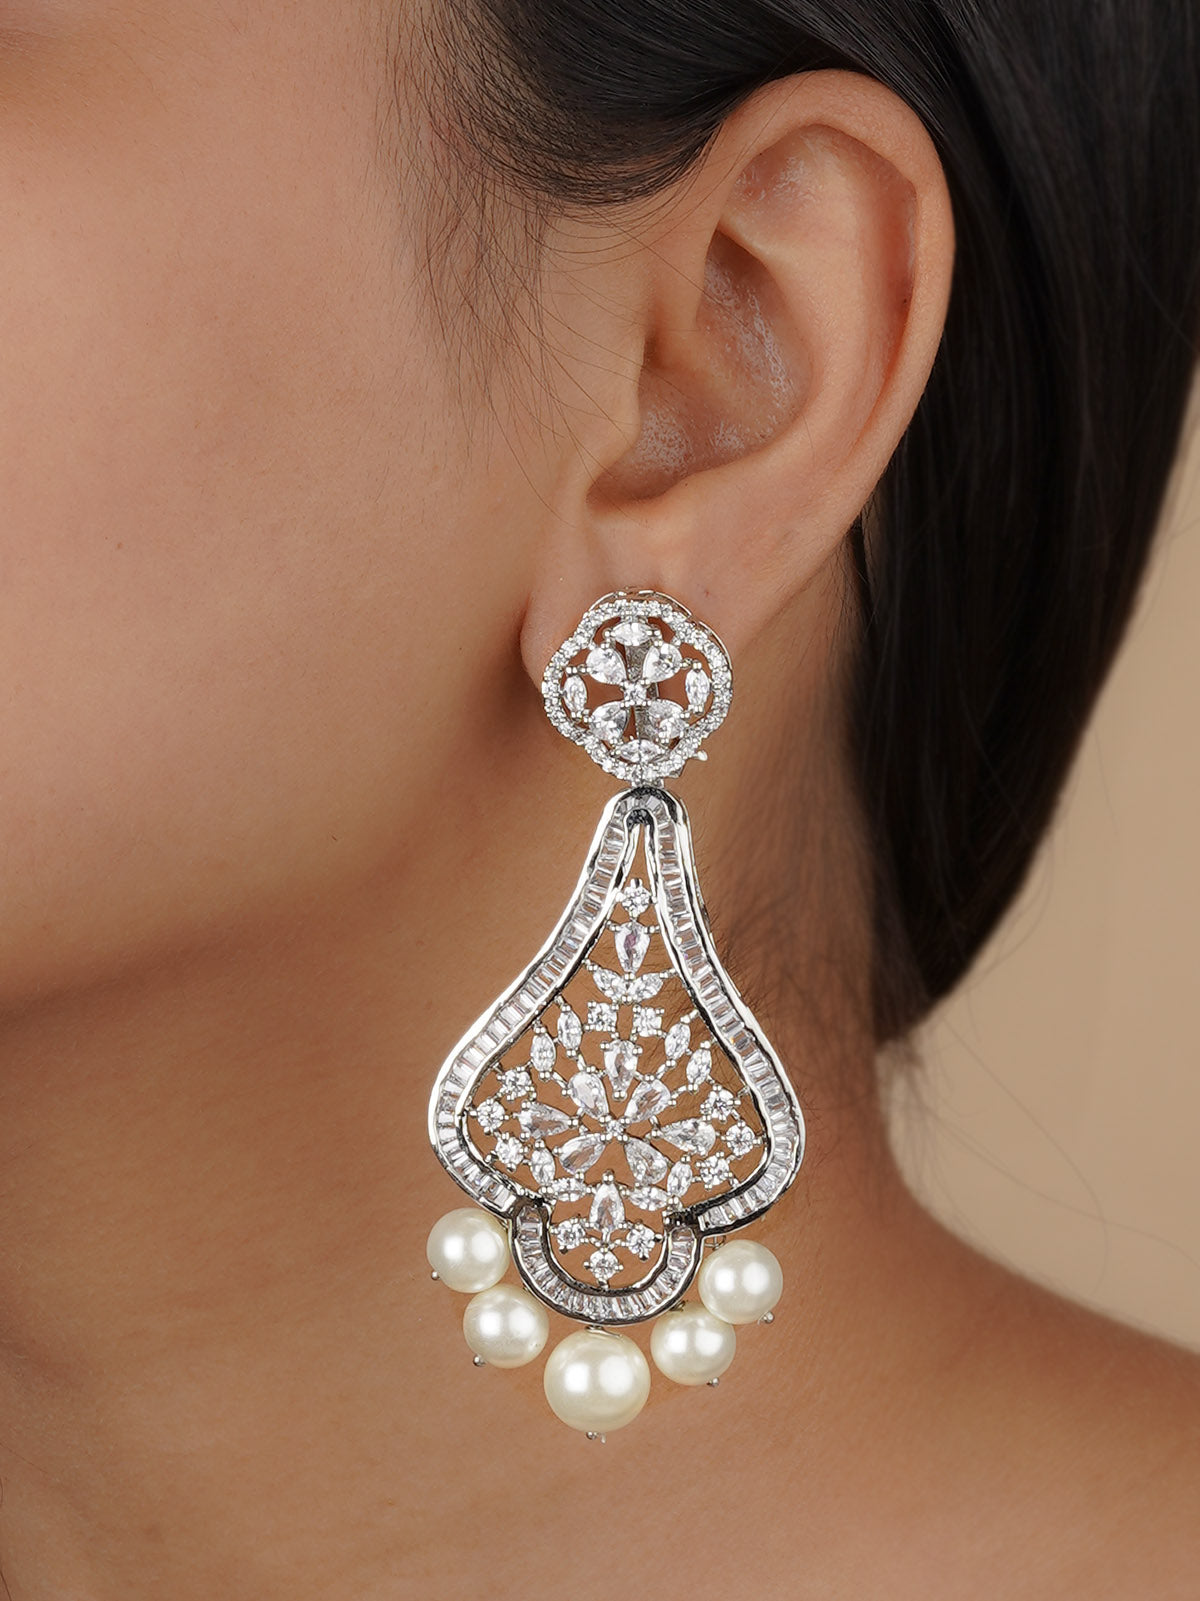 CZEAR518 - Silver Plated Faux Diamond Earrings